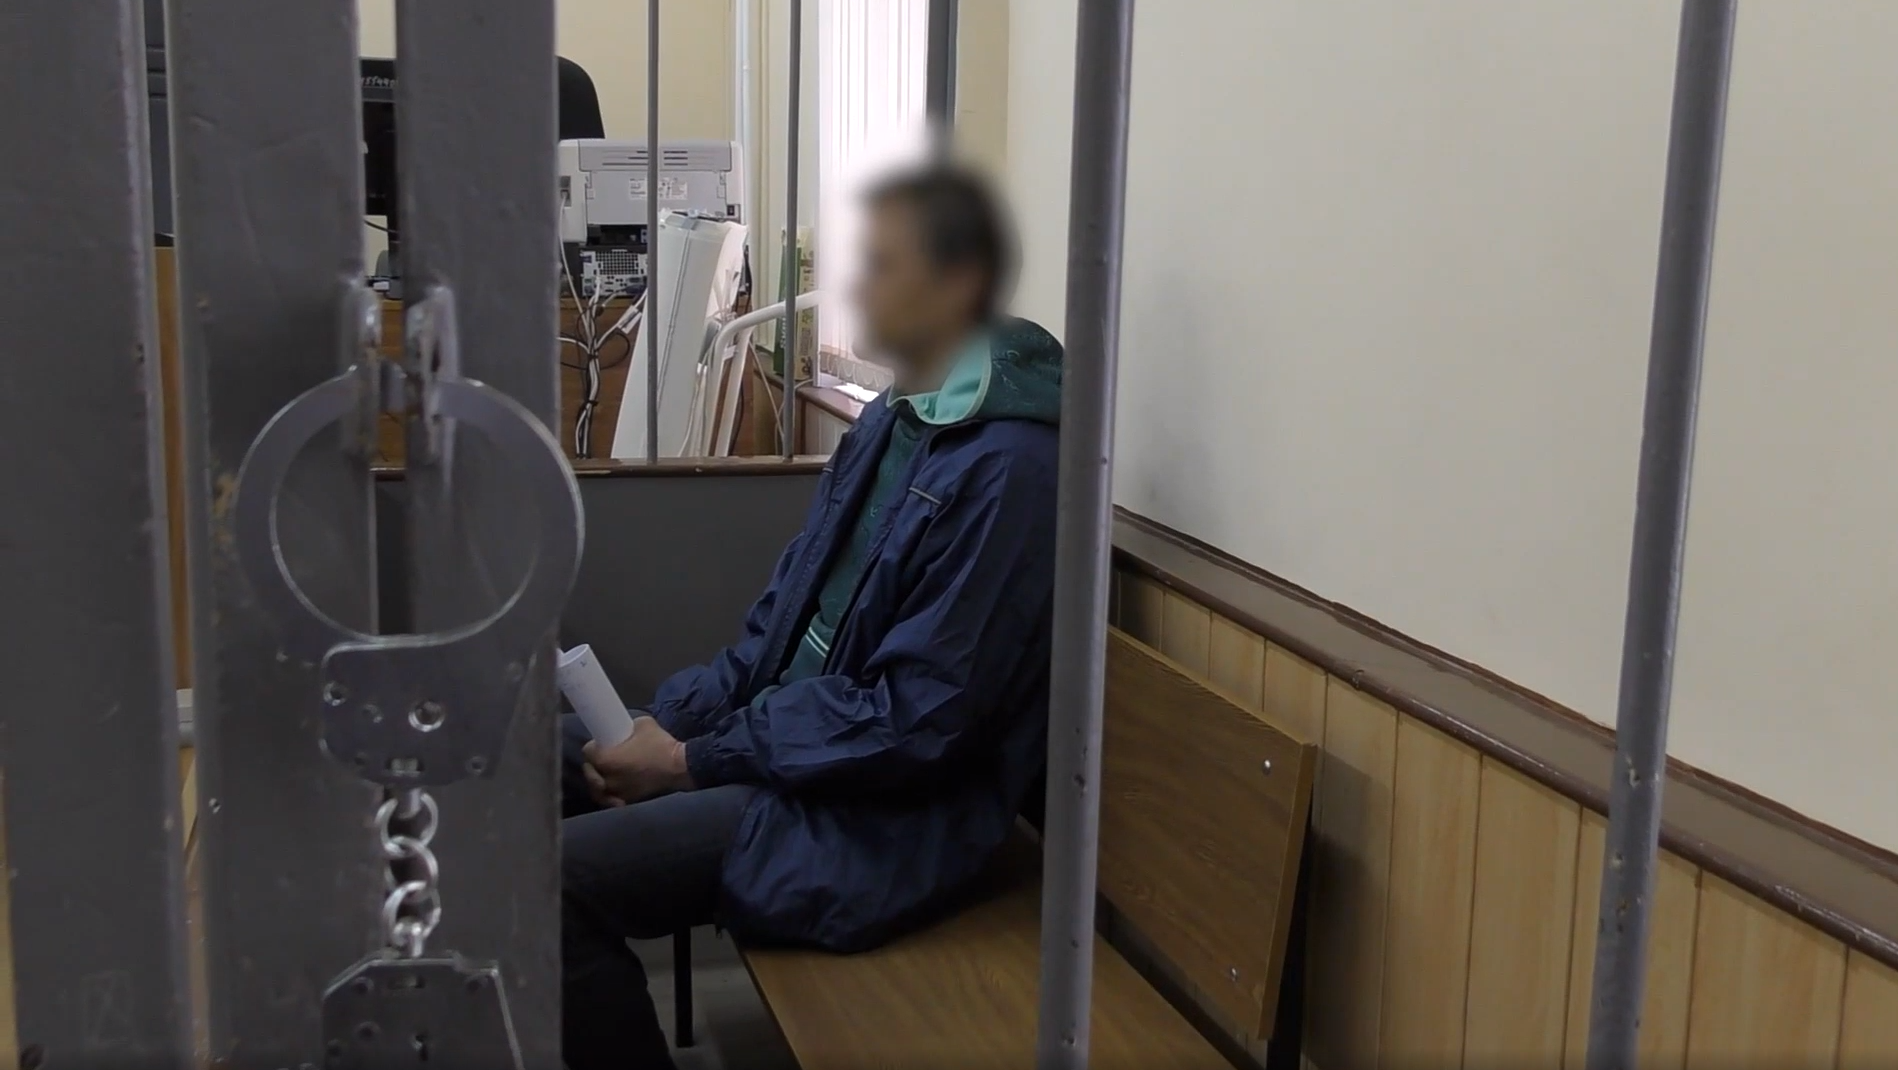 Бывшего сотрудника «Яндекса» задержали по подозрению в госизмене — видео